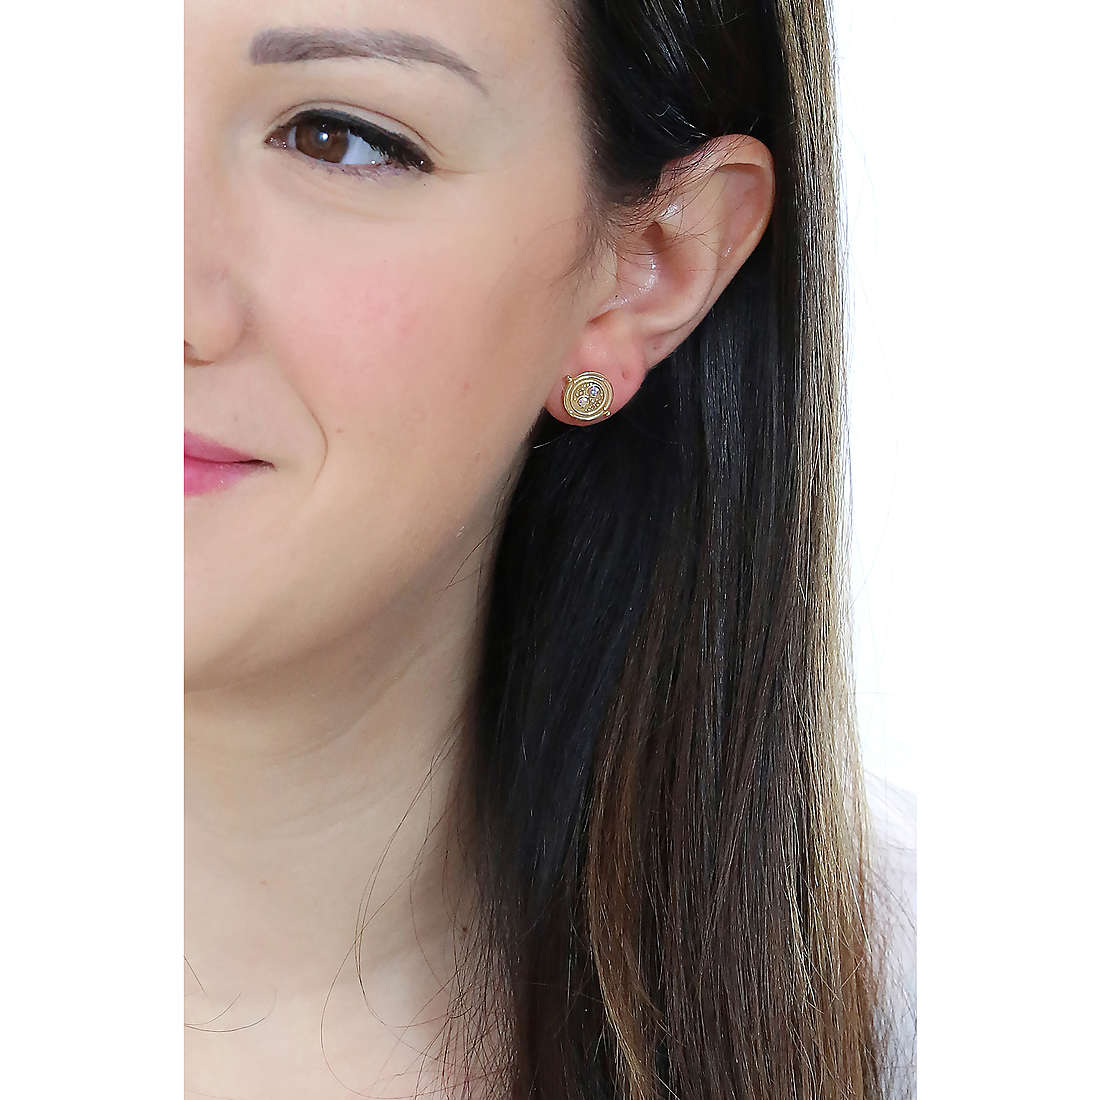 Harry Potter earrings woman HPSE100-G photo wearing